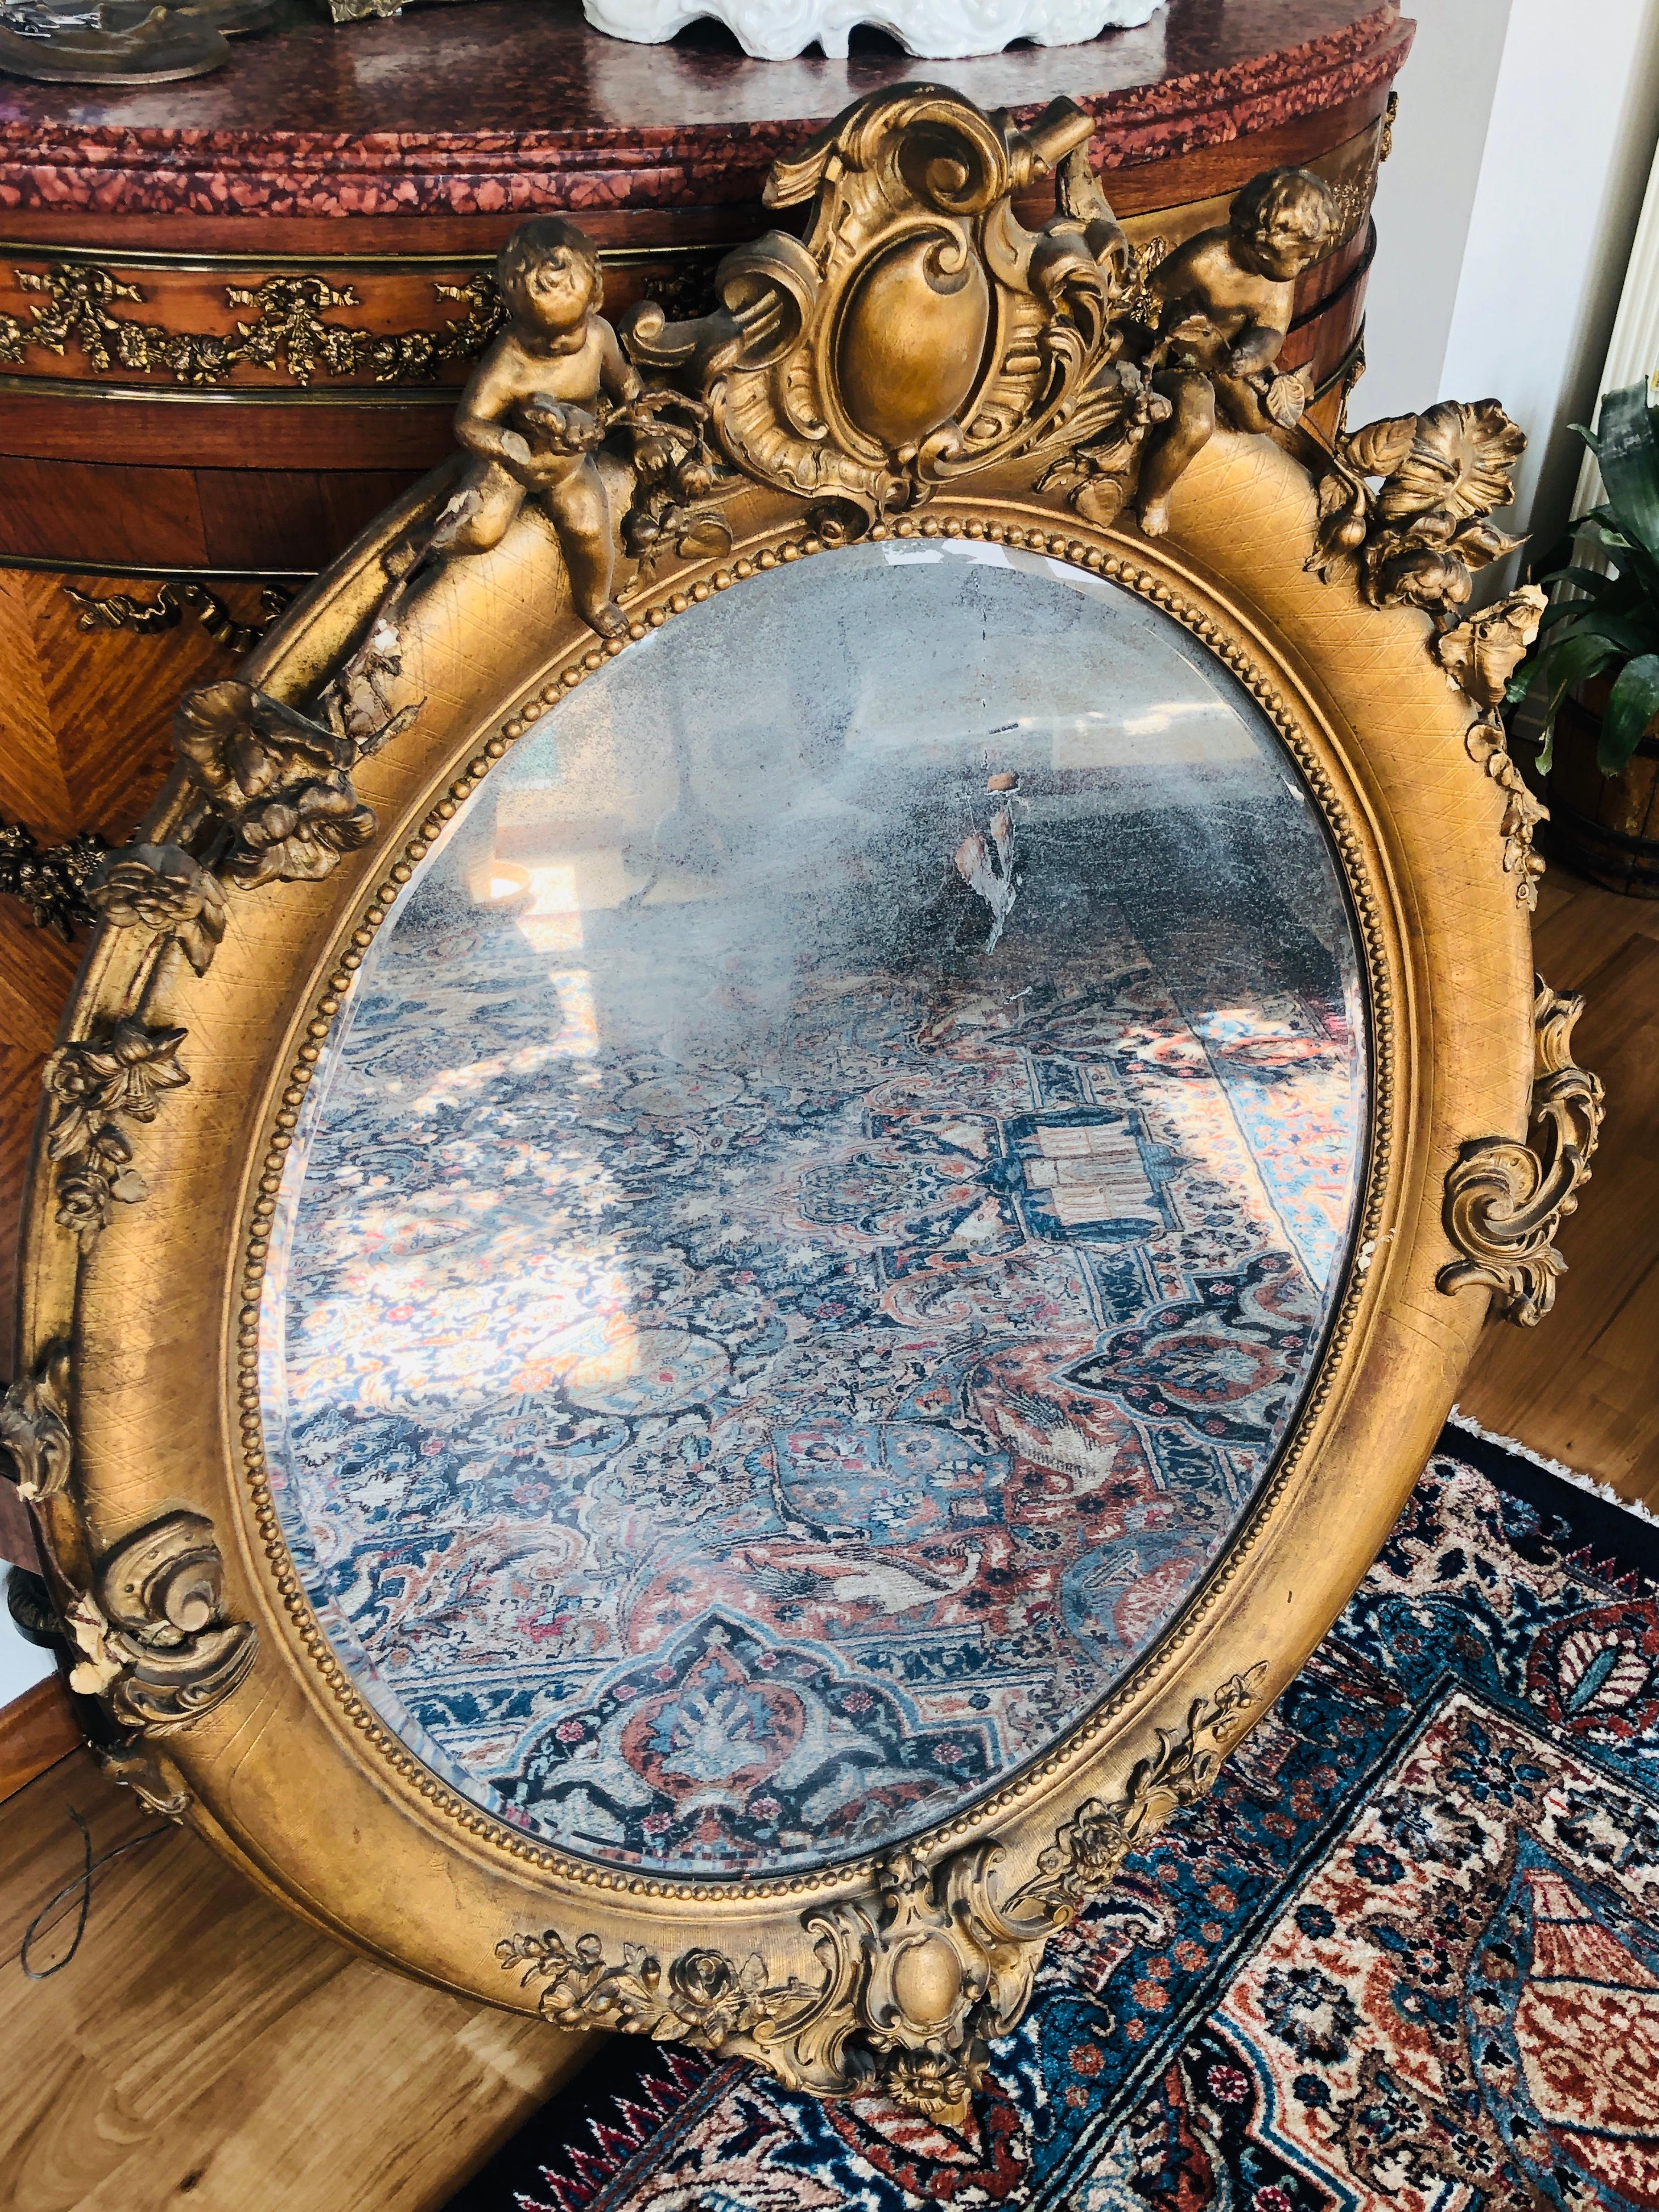 miroir ovale du XIXe siècle d'époque Napoléon III. Bois sculpté, recouvert de gesso et de feuilles d'or. Cette pièce a de beaux ornements et un couple de chérubins sur le dessus et elle porte son verre original.
France, 1860.
  